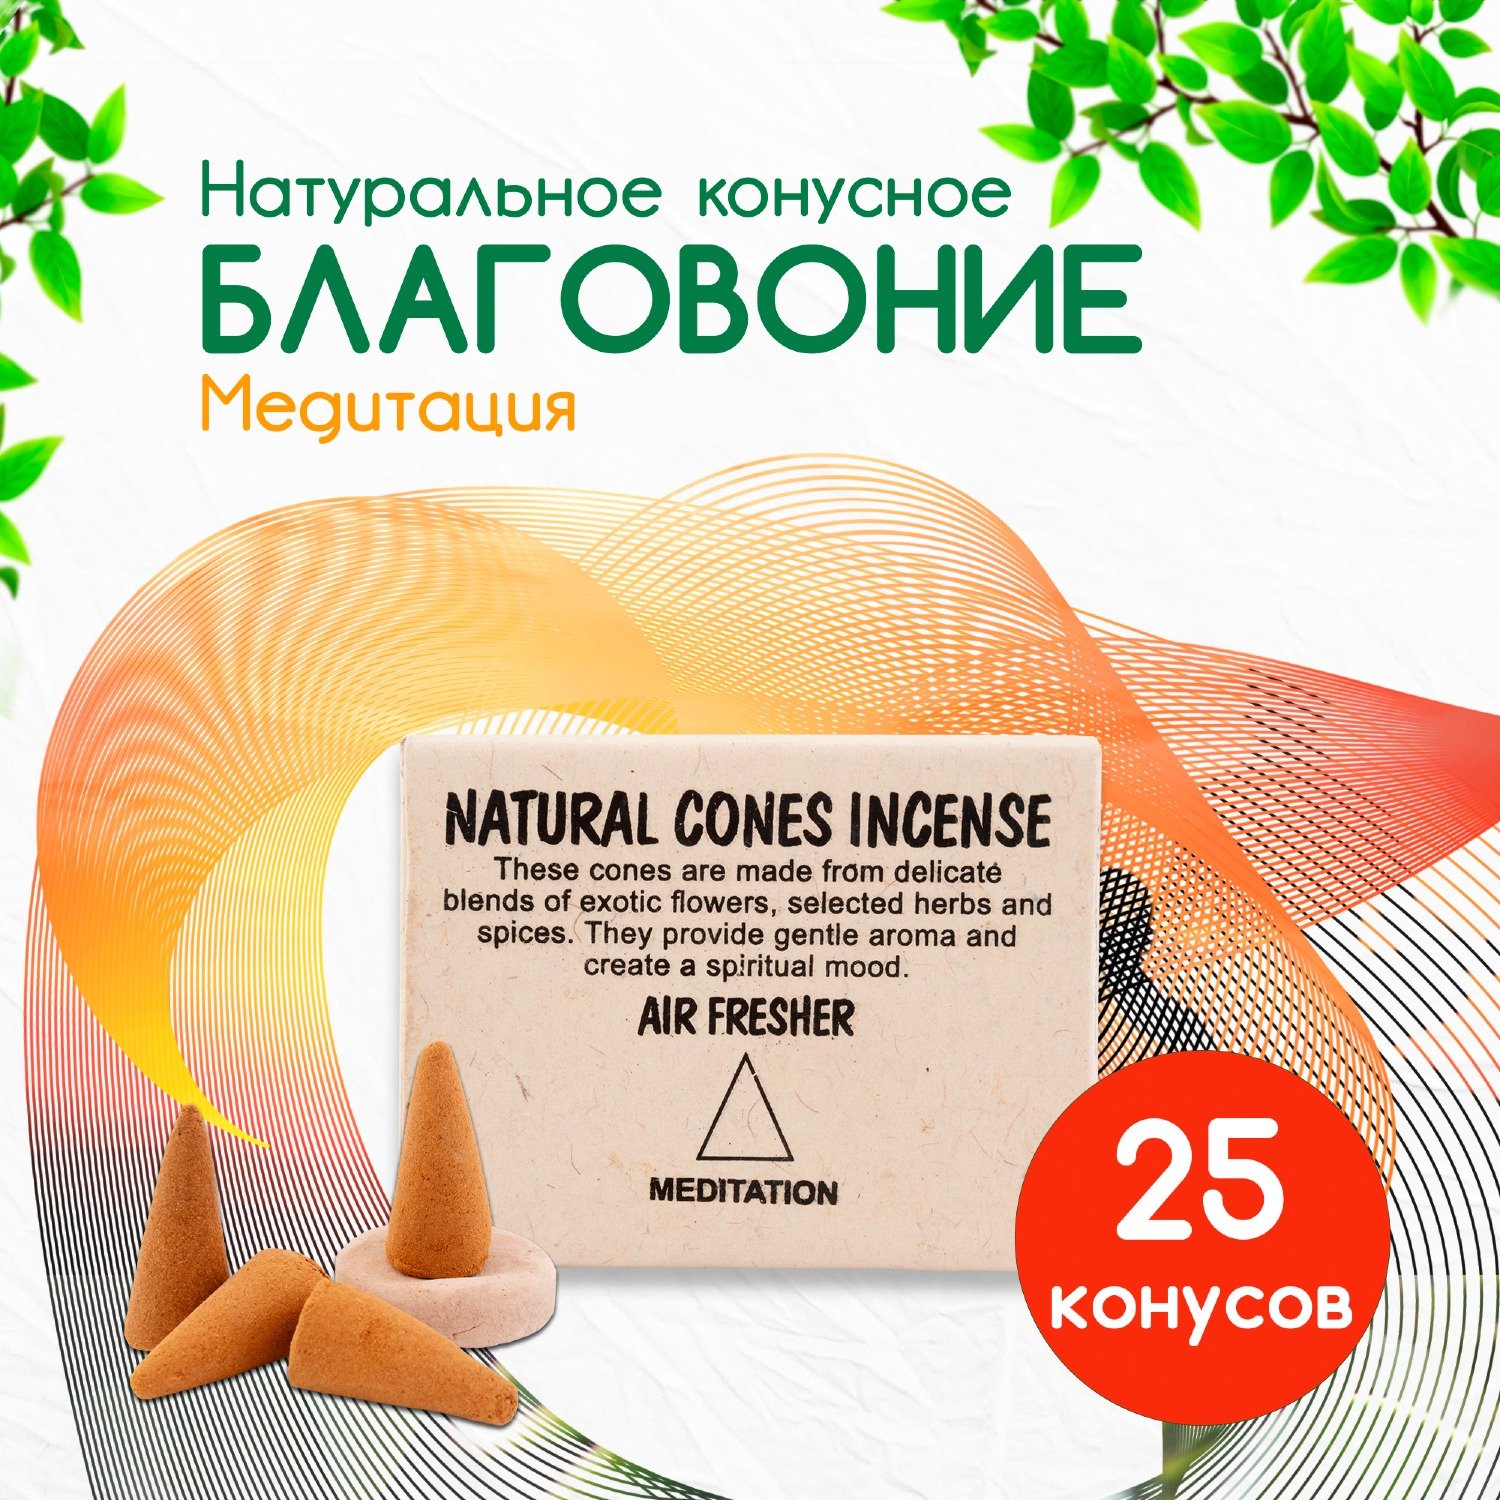 Natural Cones Incense "Meditation" (Натуральное конусное благовоние "Медитационное"), 25 конусов по 3 см. 